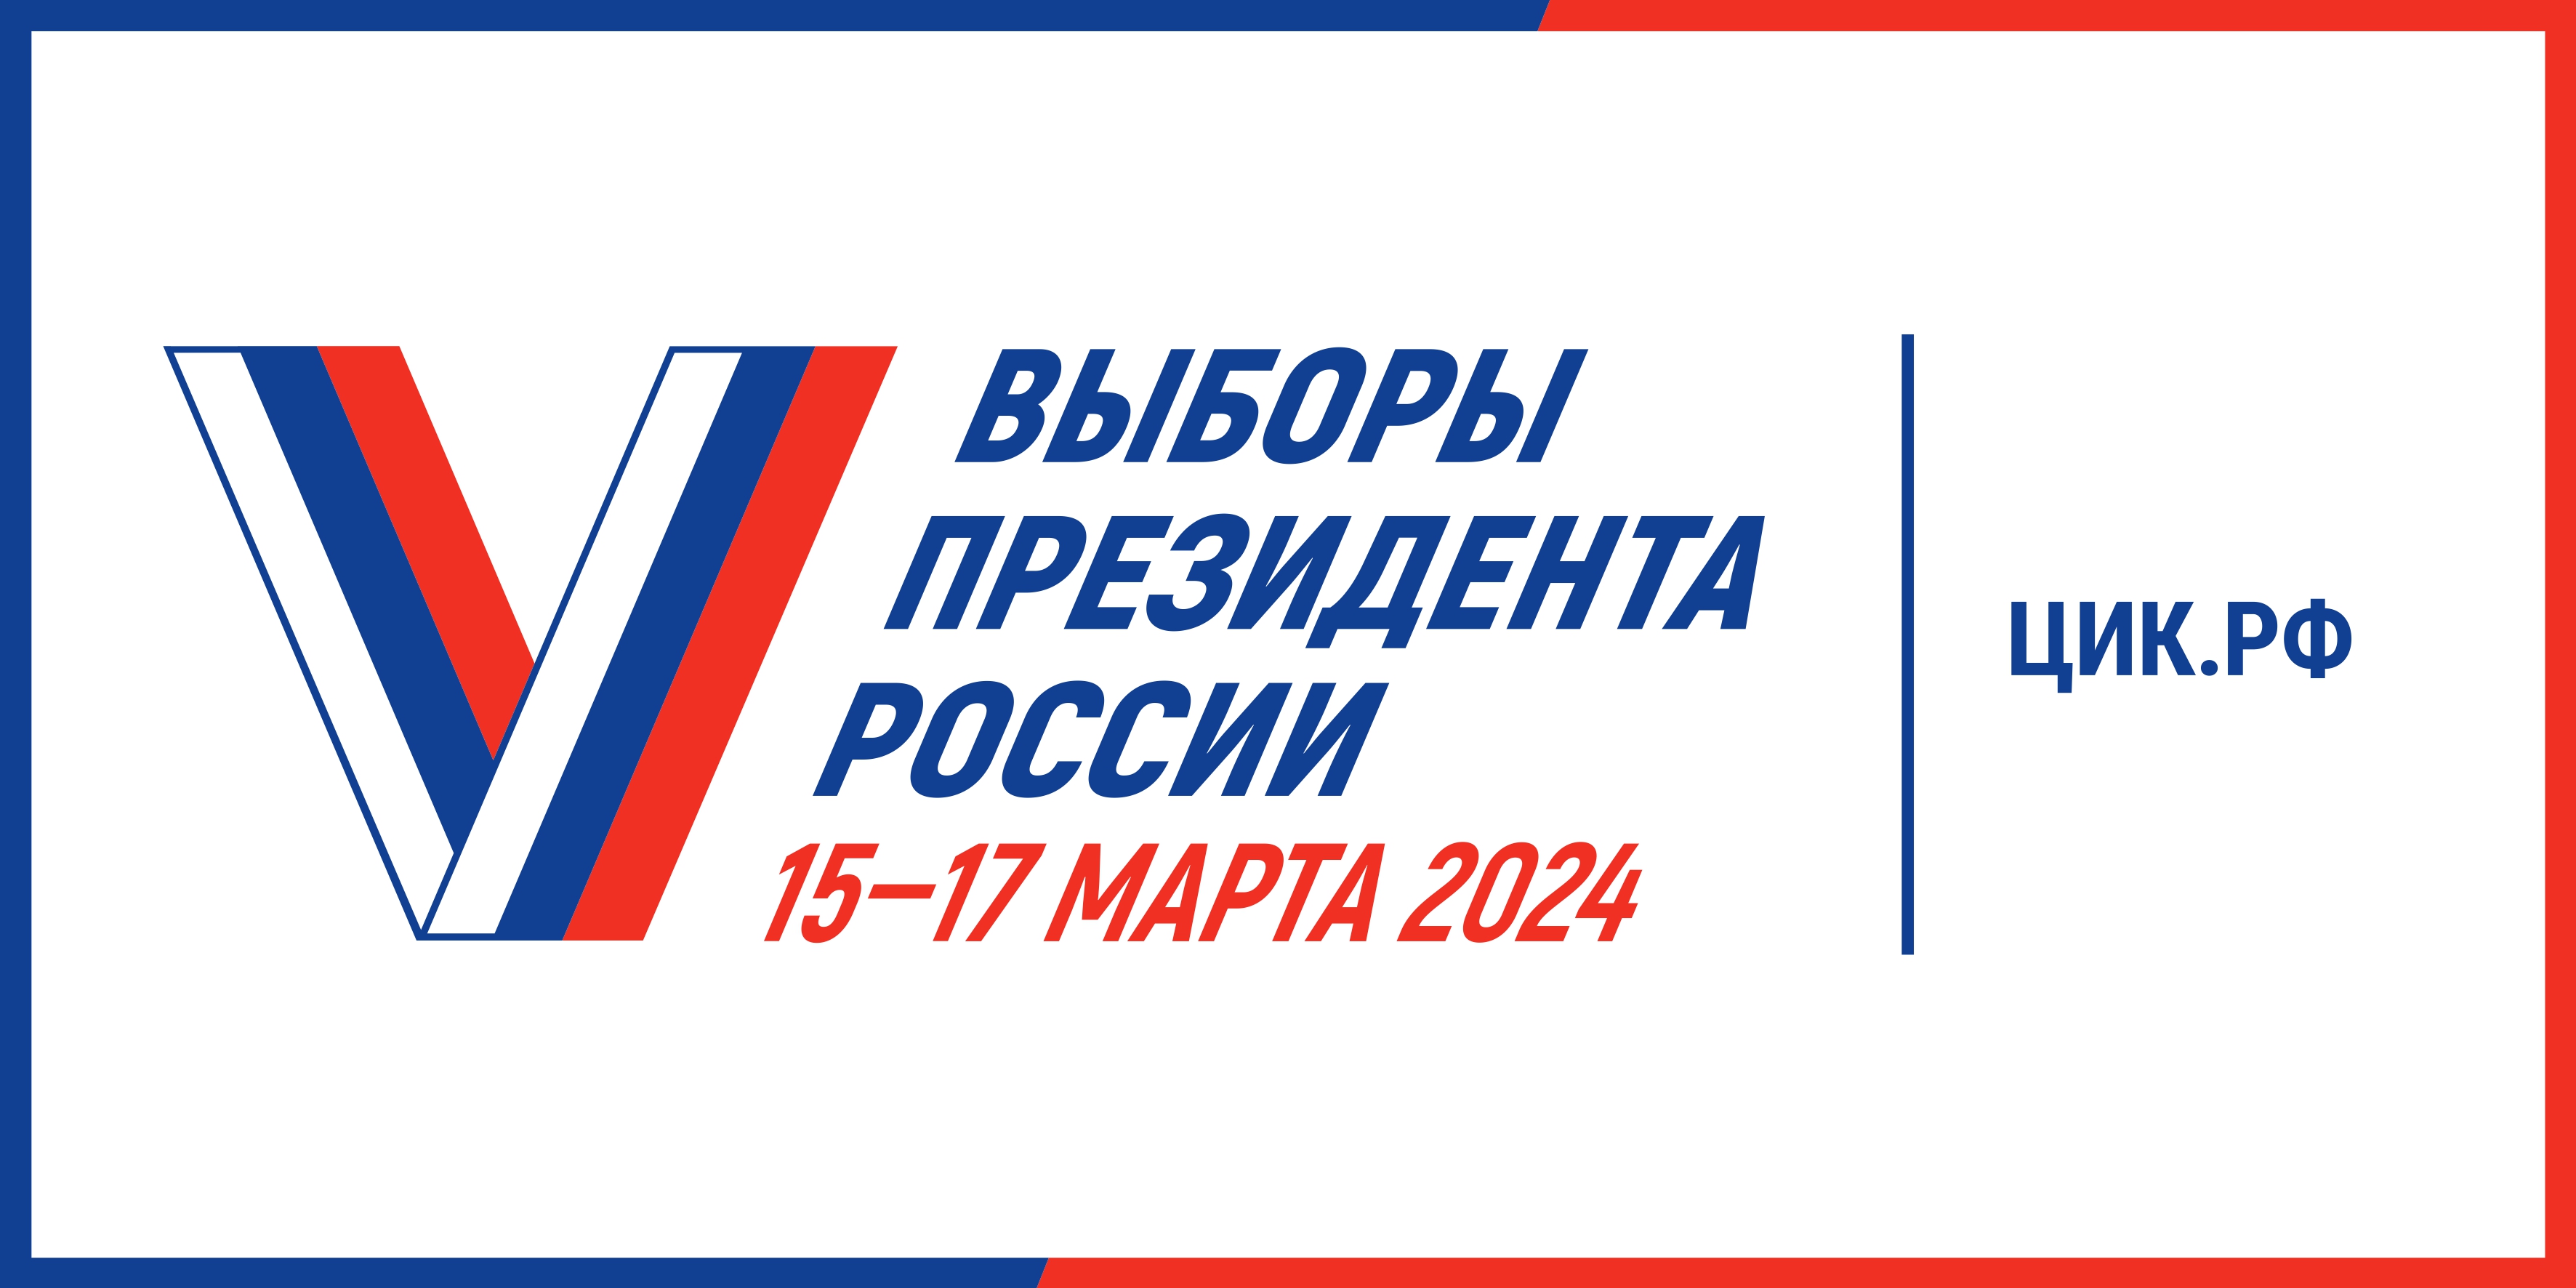 Выборы Президента 2024.